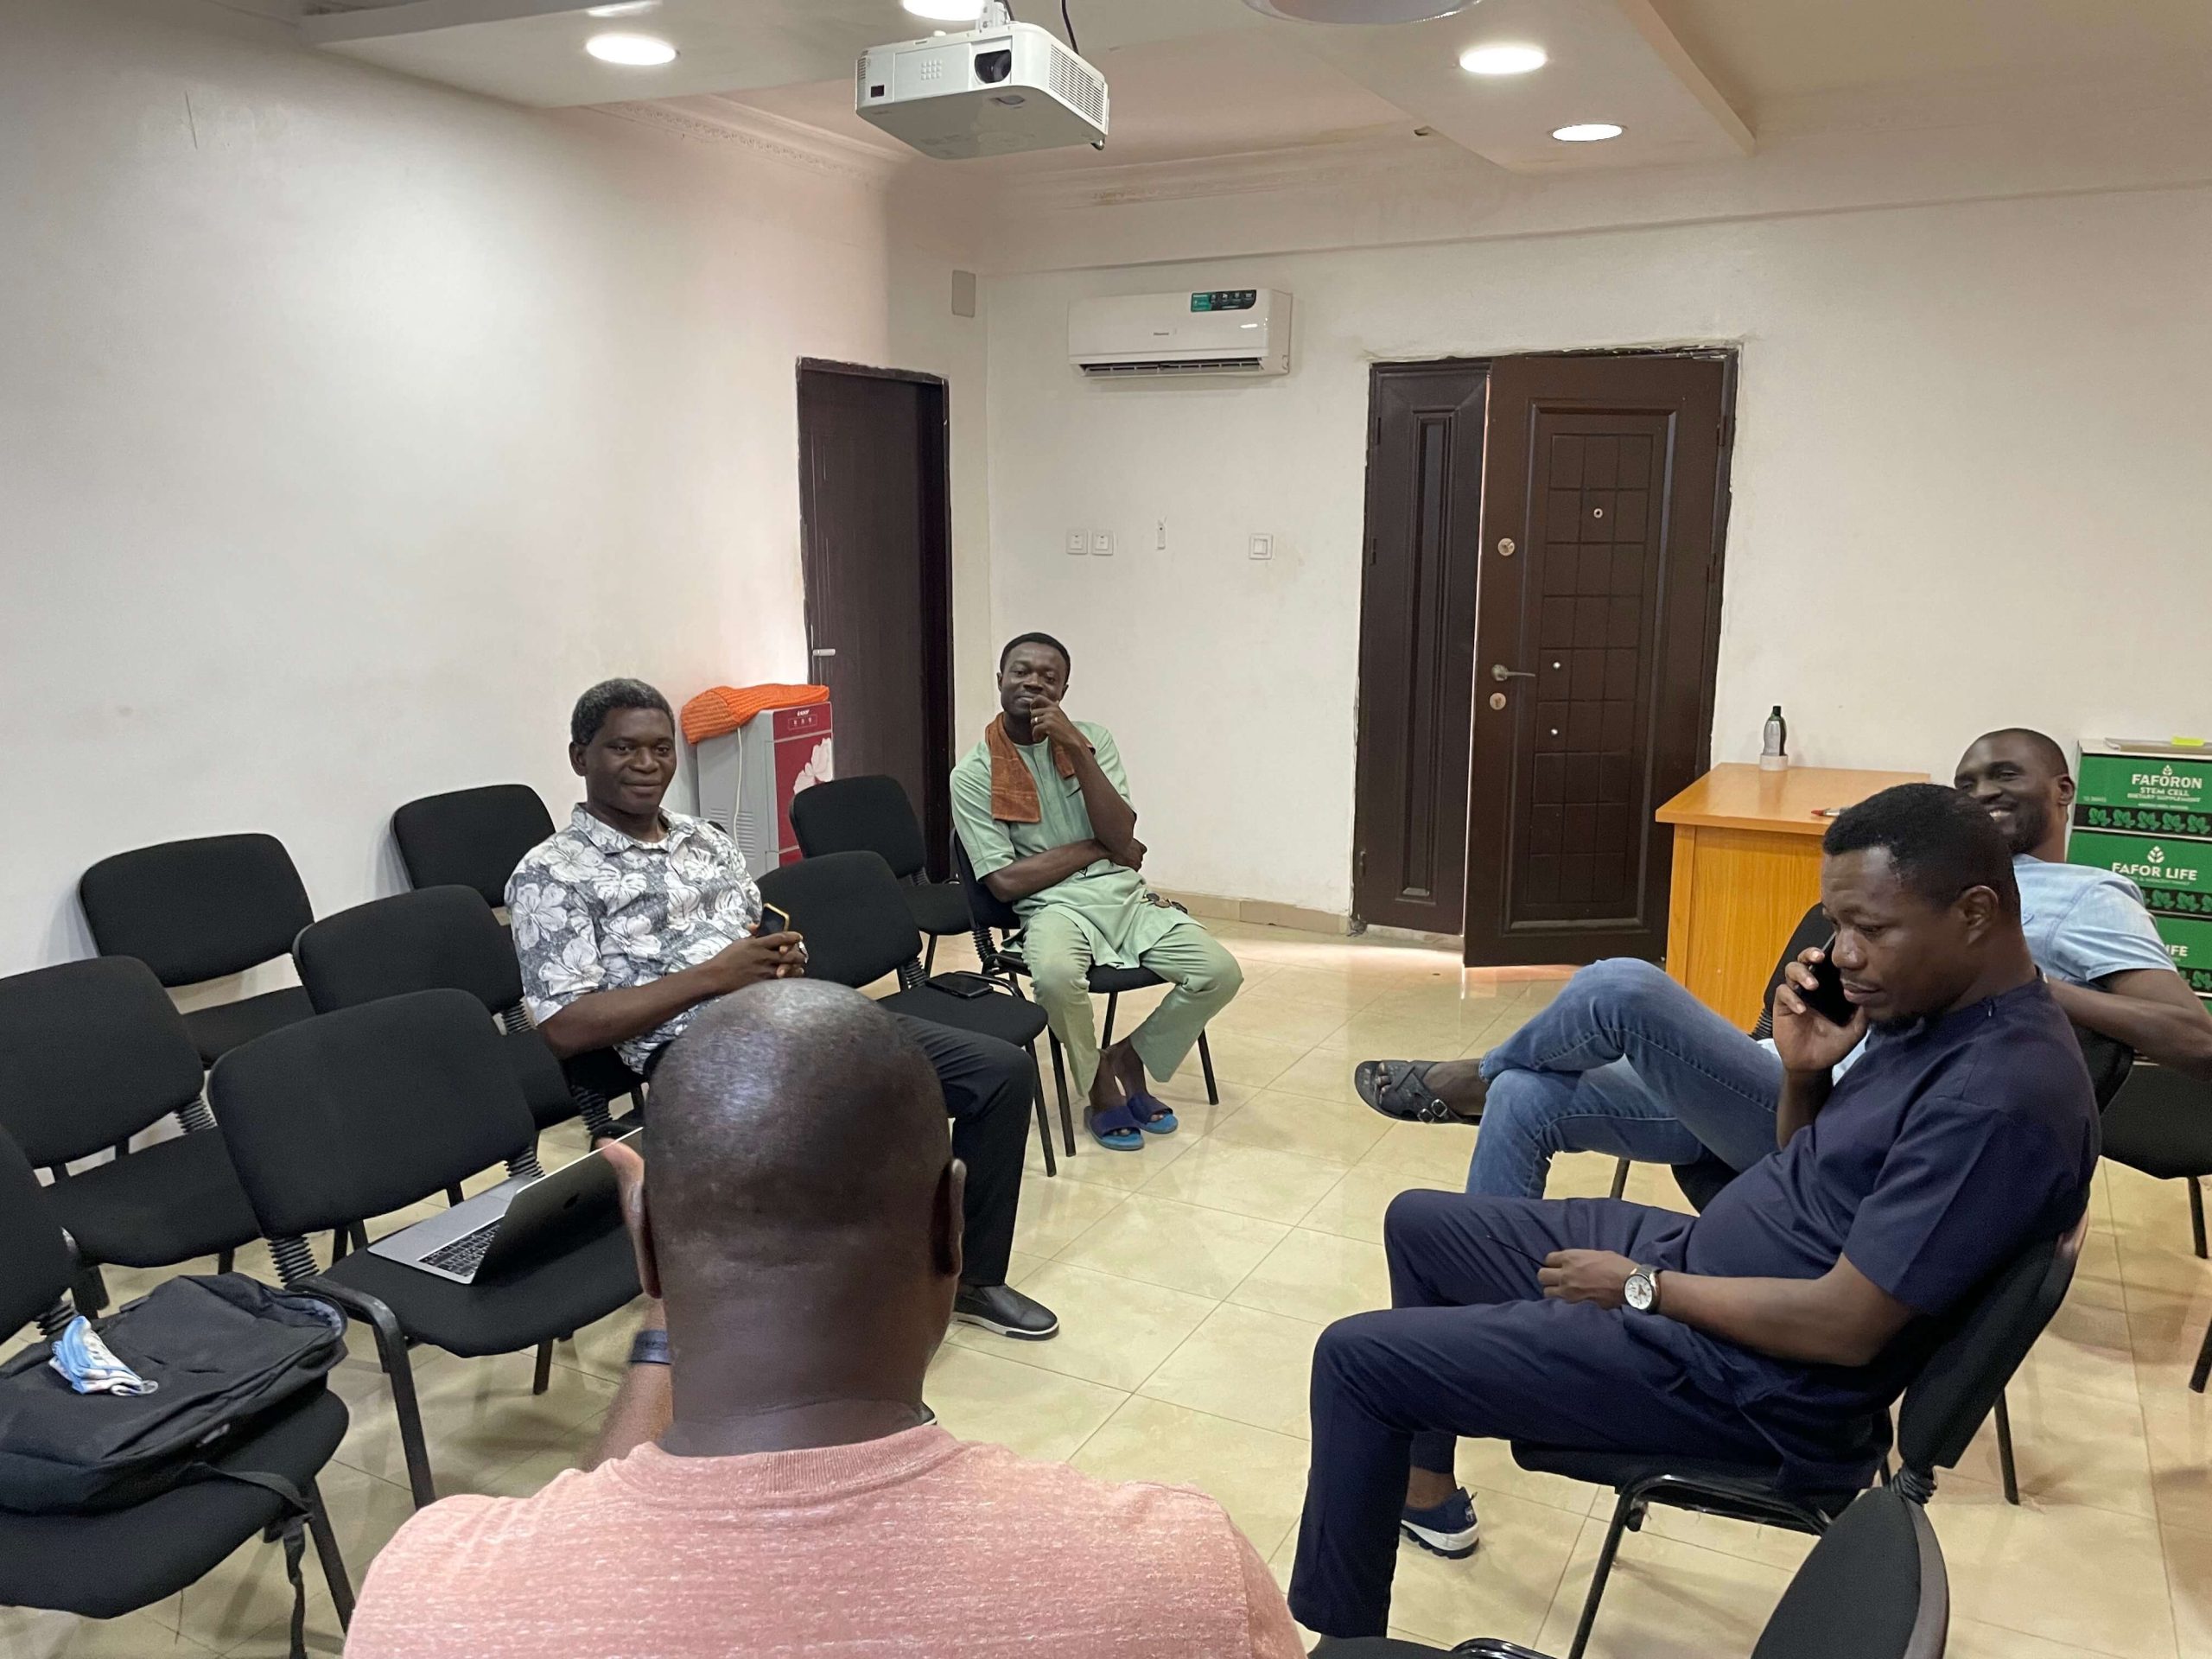 گروهی از نیجریه ای ها در یک دایره نشسته اند و در مورد دیوی بحث می کنند